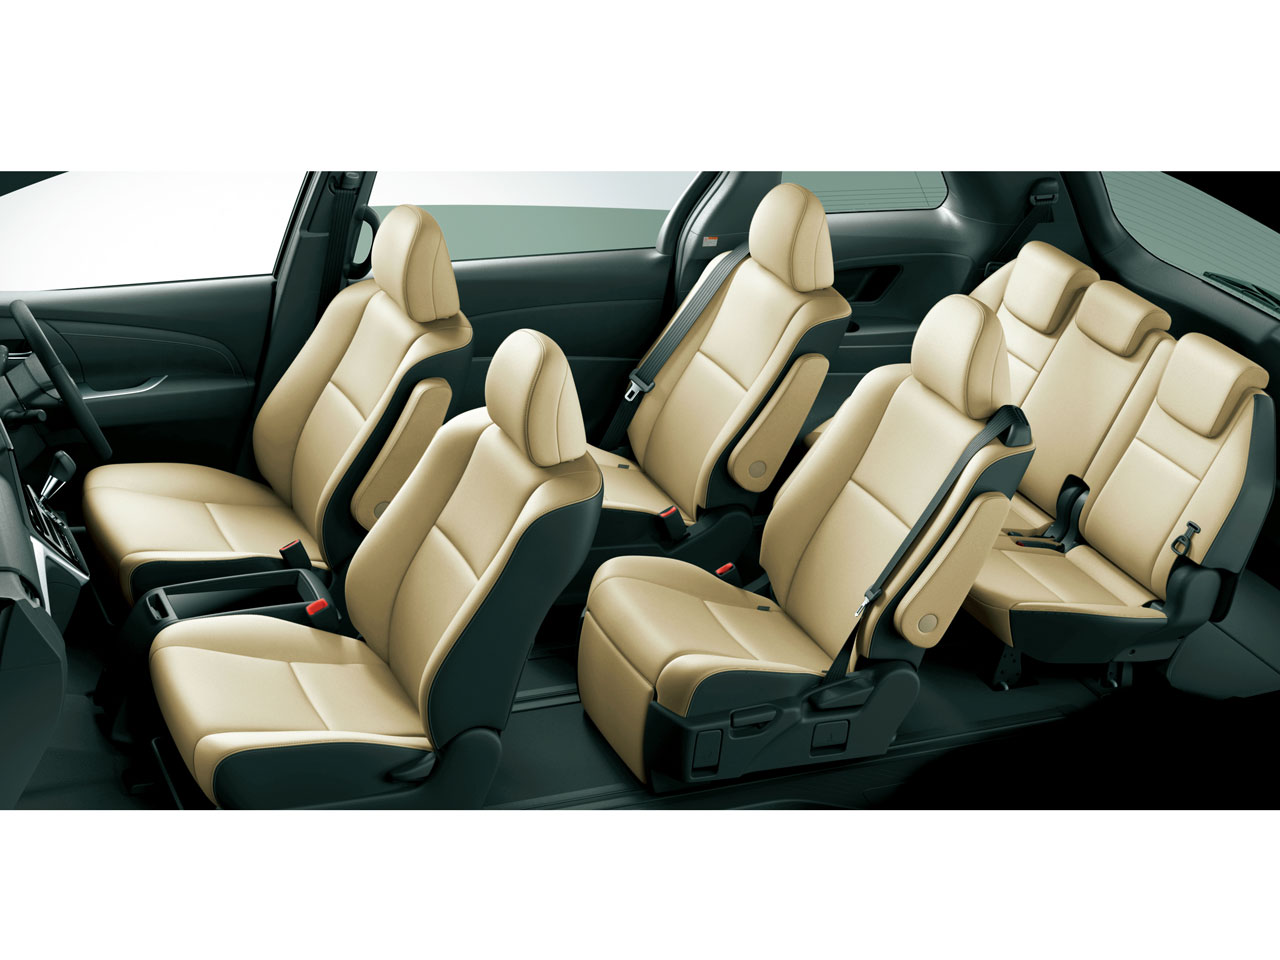 トヨタ エスティマ 06年モデル アエラス 8人乗り 価格 性能 装備 オプション 16年6月6日発売 価格 Com